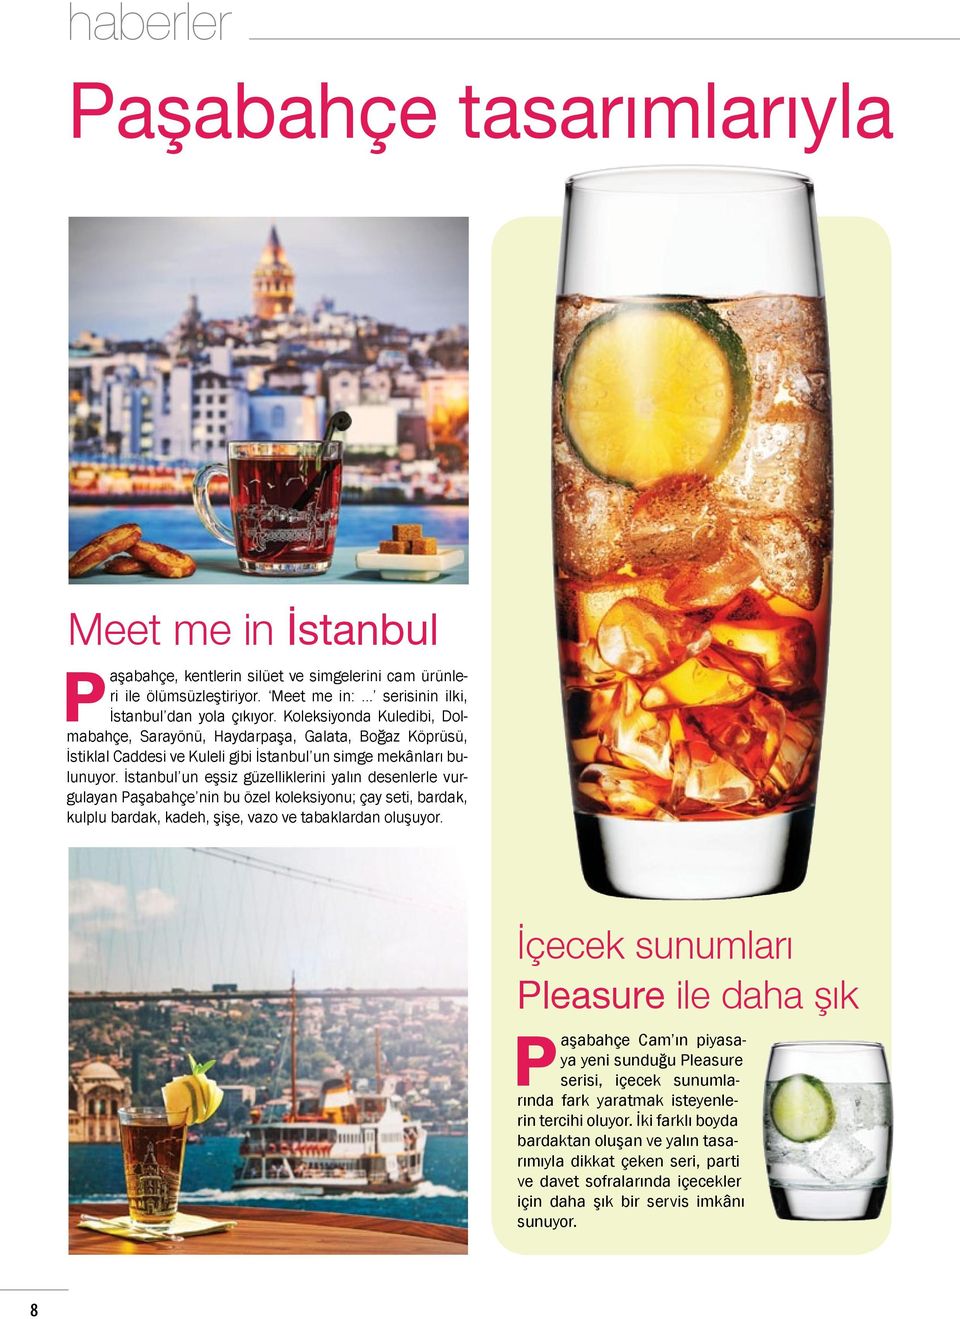 İstanbul un eşsiz güzelliklerini yalın desenlerle vurgulayan Paşabahçe nin bu özel koleksiyonu; çay seti, bardak, kulplu bardak, kadeh, şişe, vazo ve tabaklardan oluşuyor.